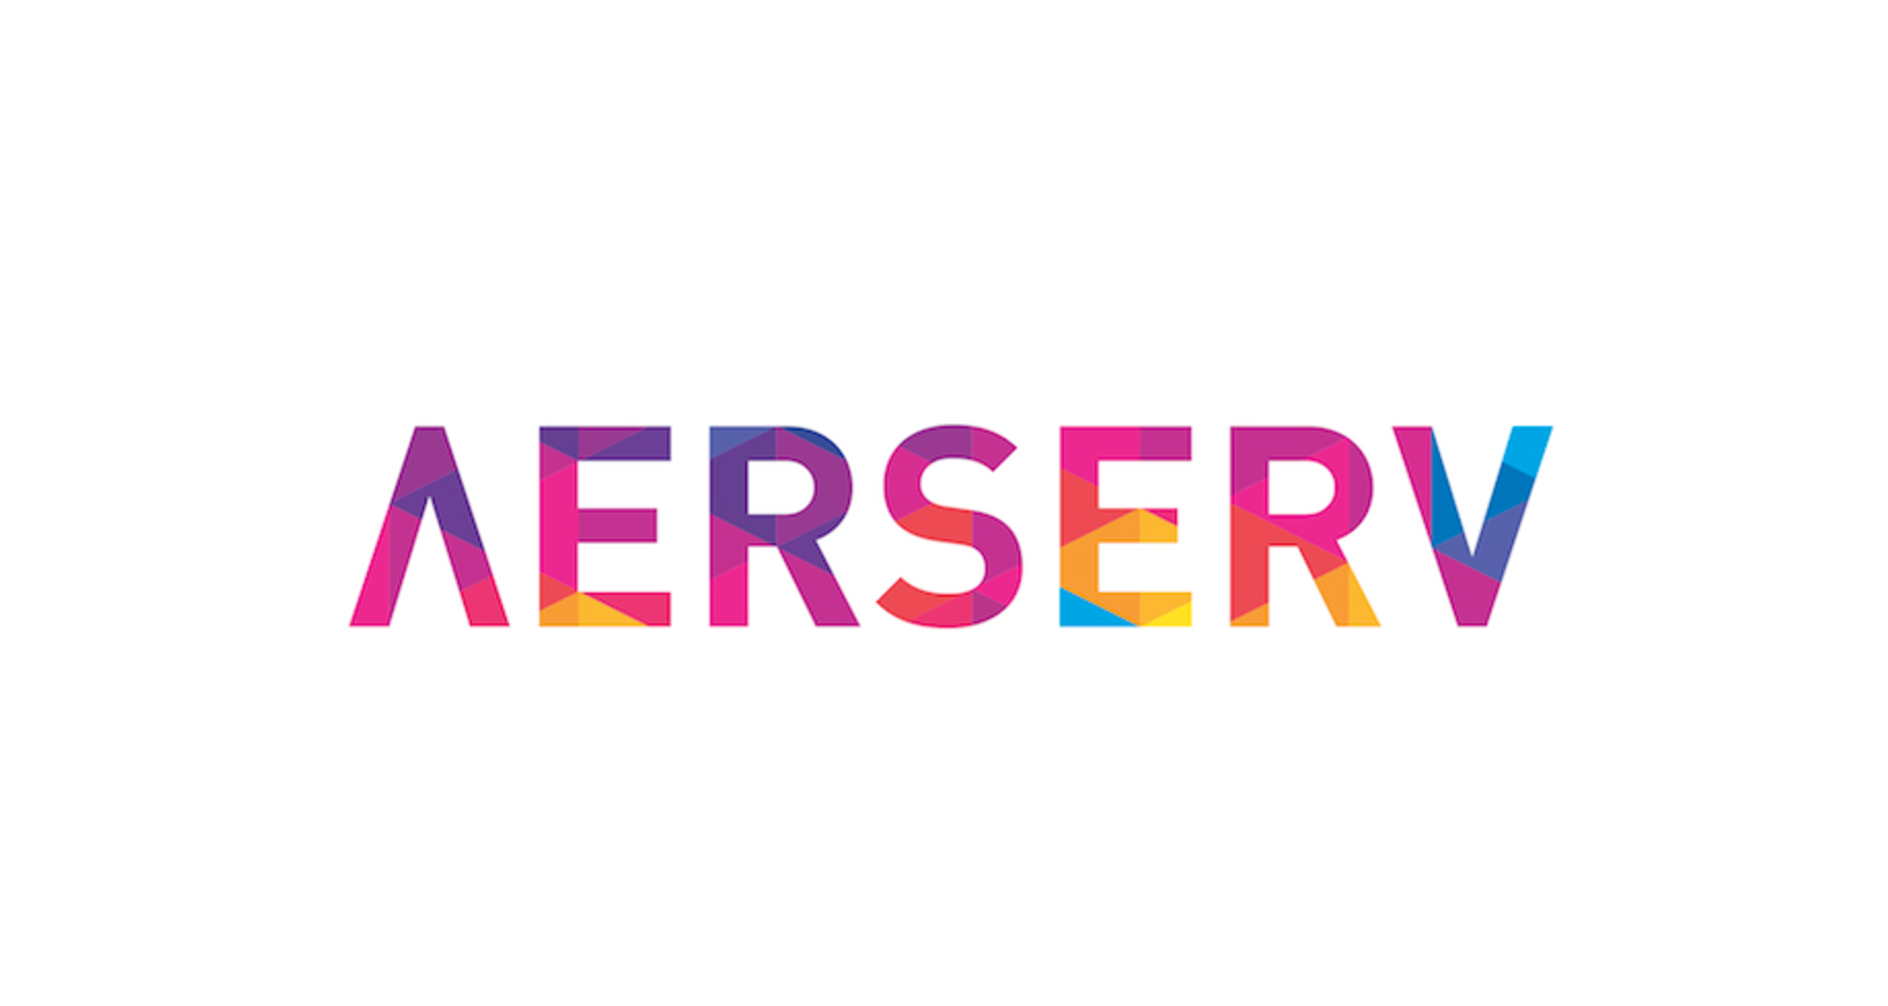 AerServ、完全視聴型課金(CPCV)を開始